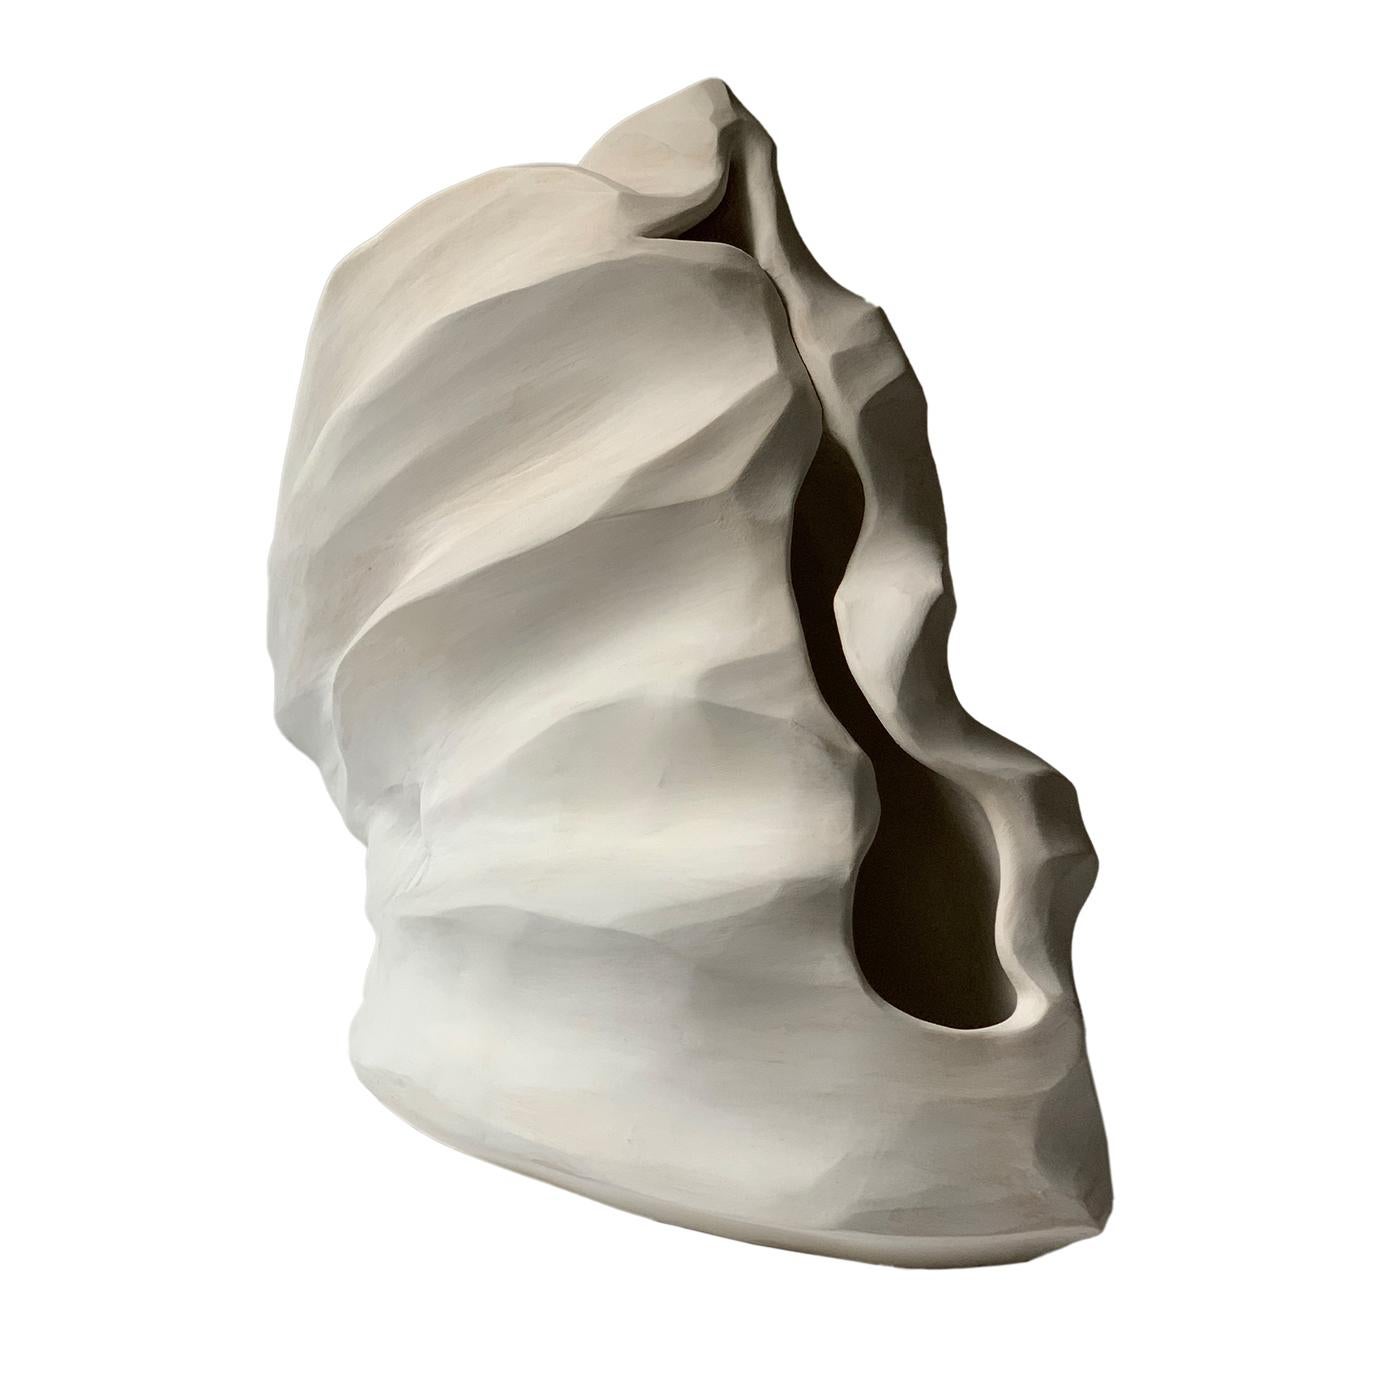 Intorno al Vuoto Sculpture For Sale